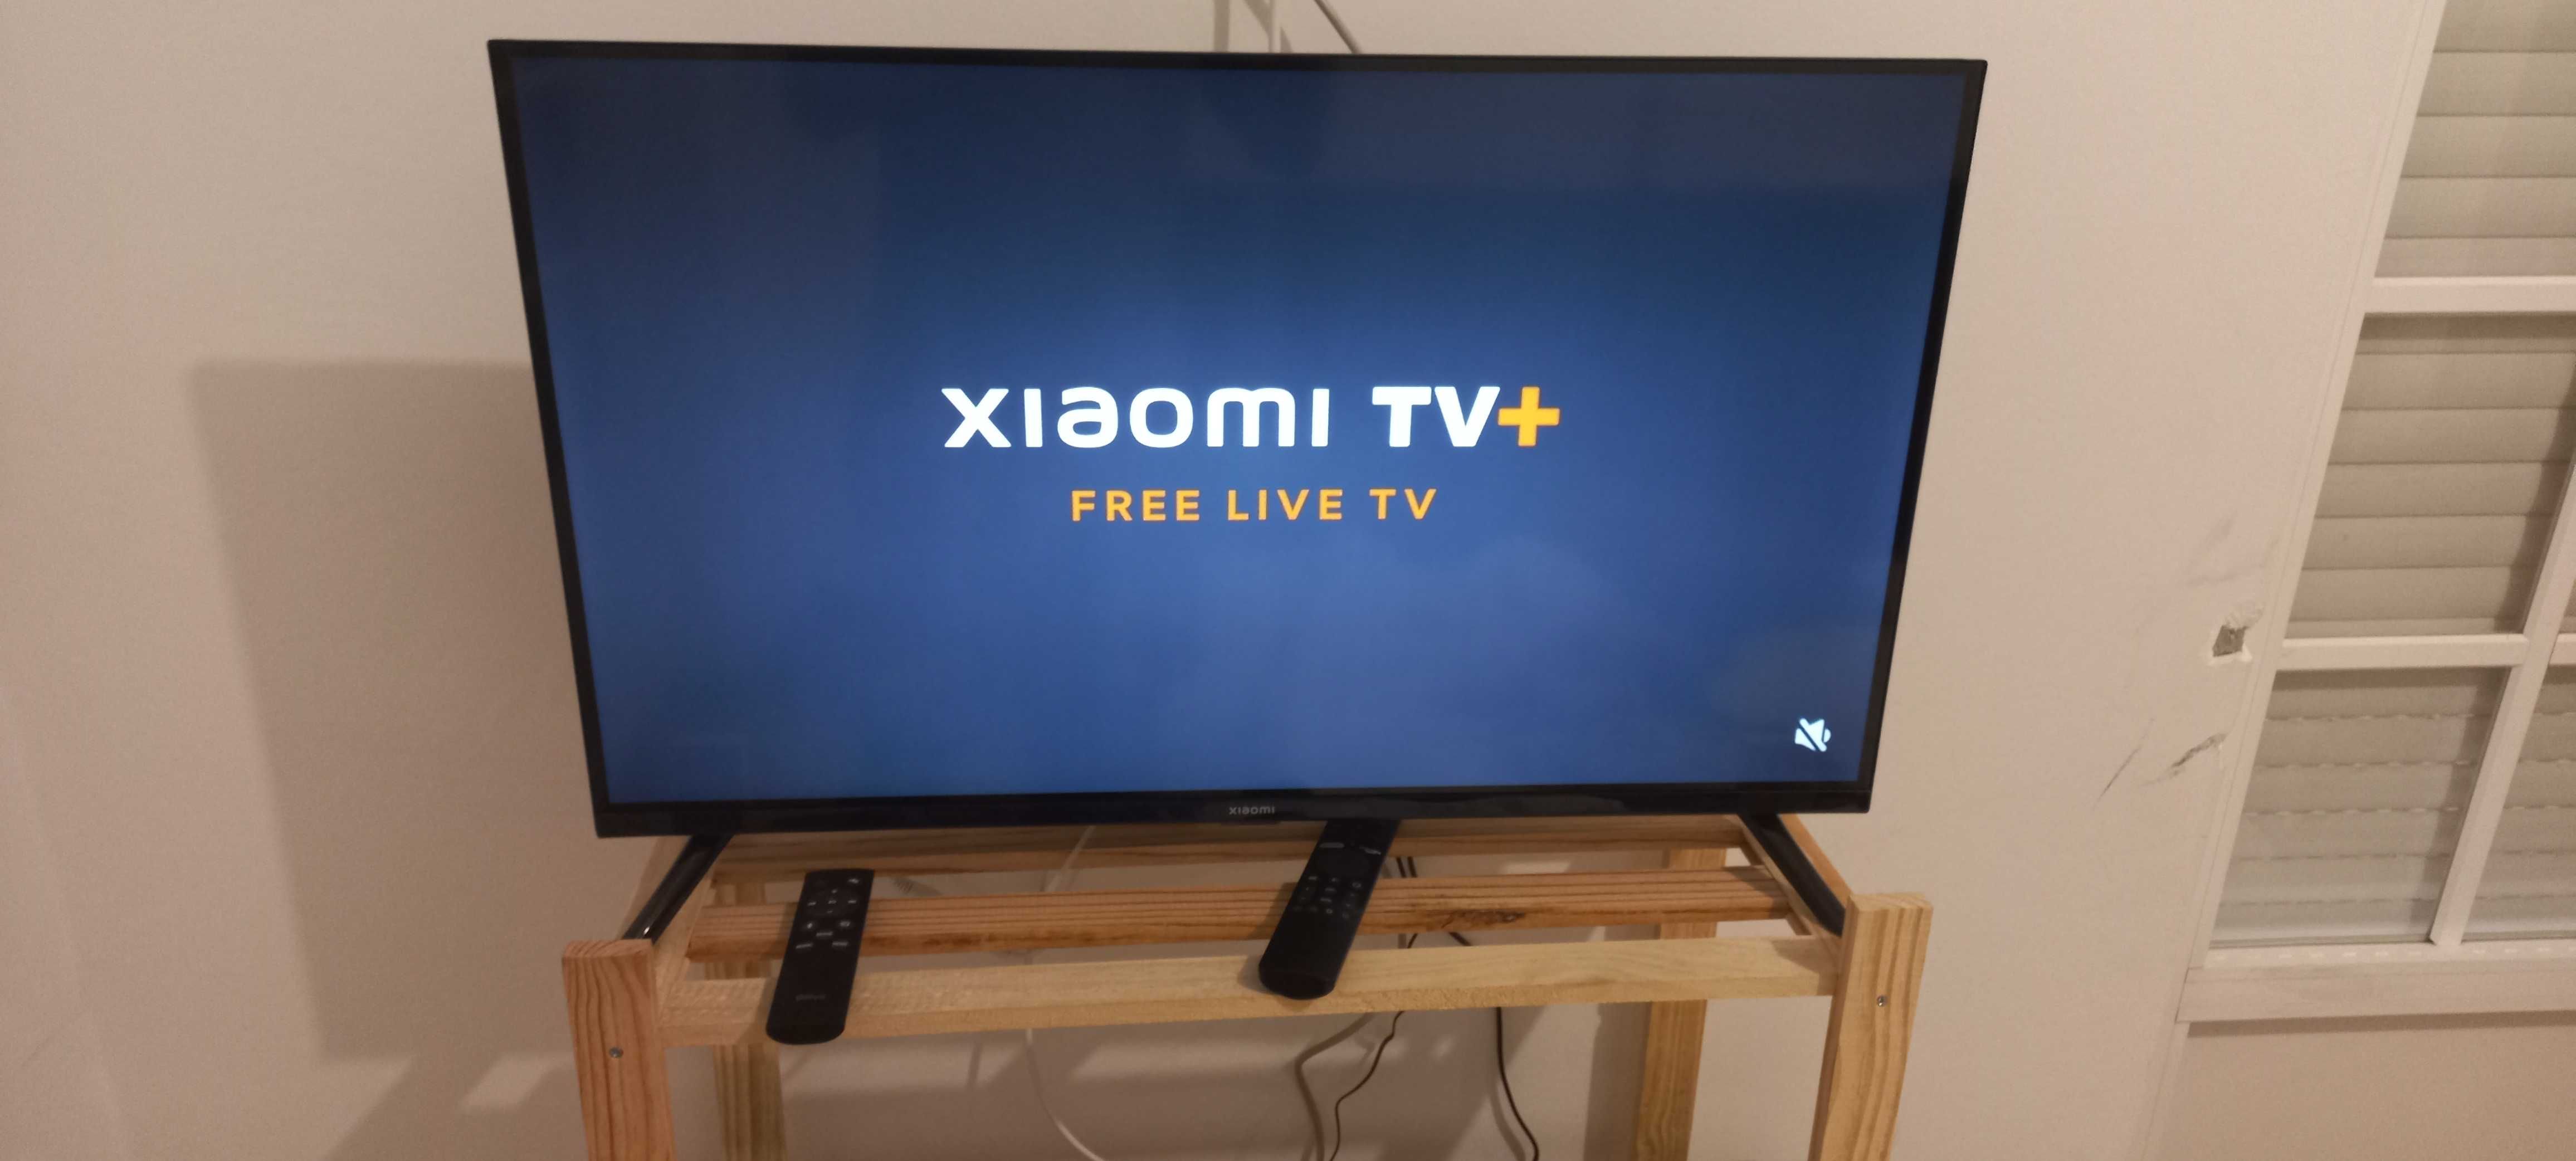 SmartTv xiaomi 32 nova com garantia. Smartv tv com android.